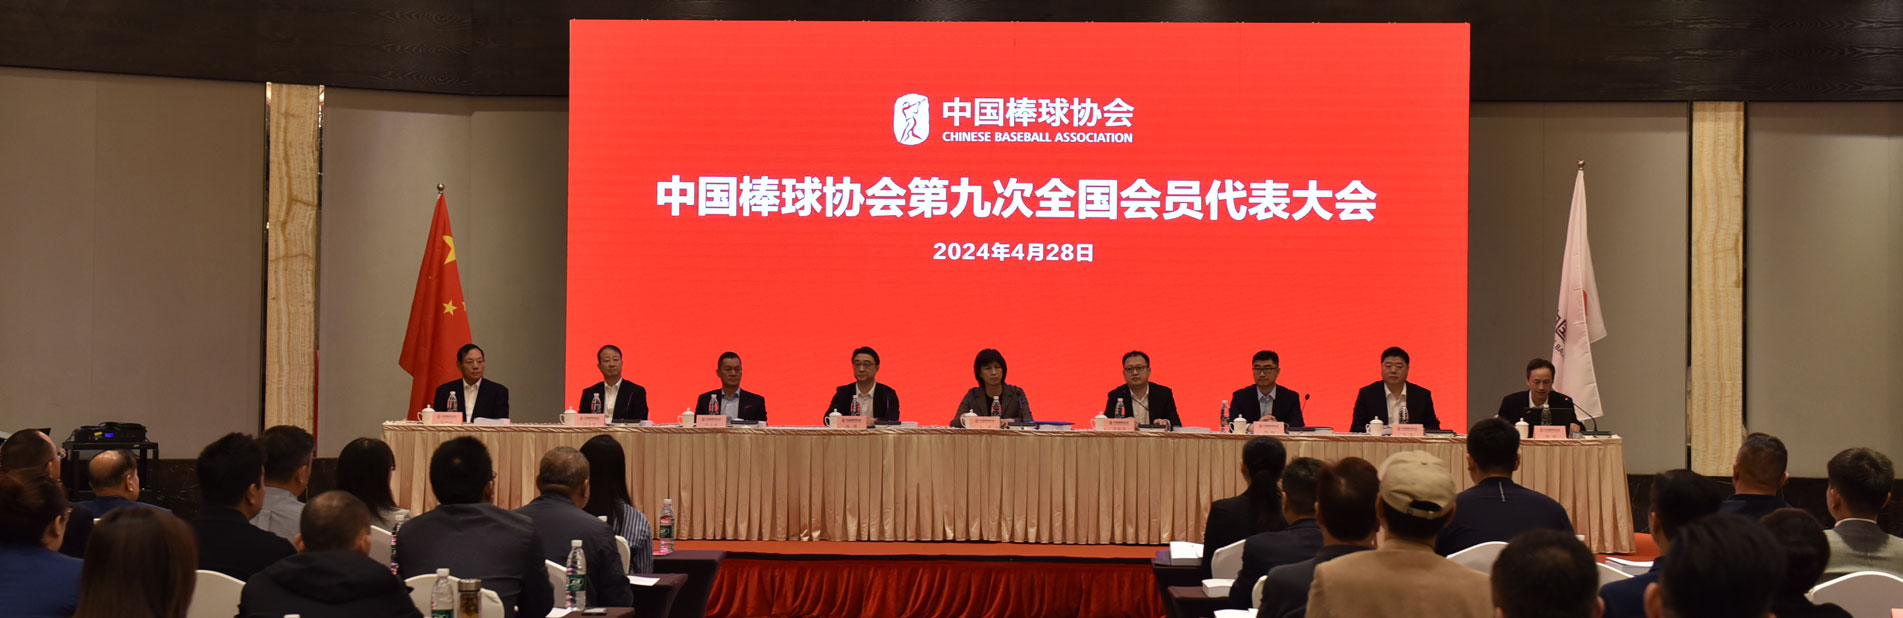 中国棒球协会召开第九次全国会员代表大会暨协会换届会议